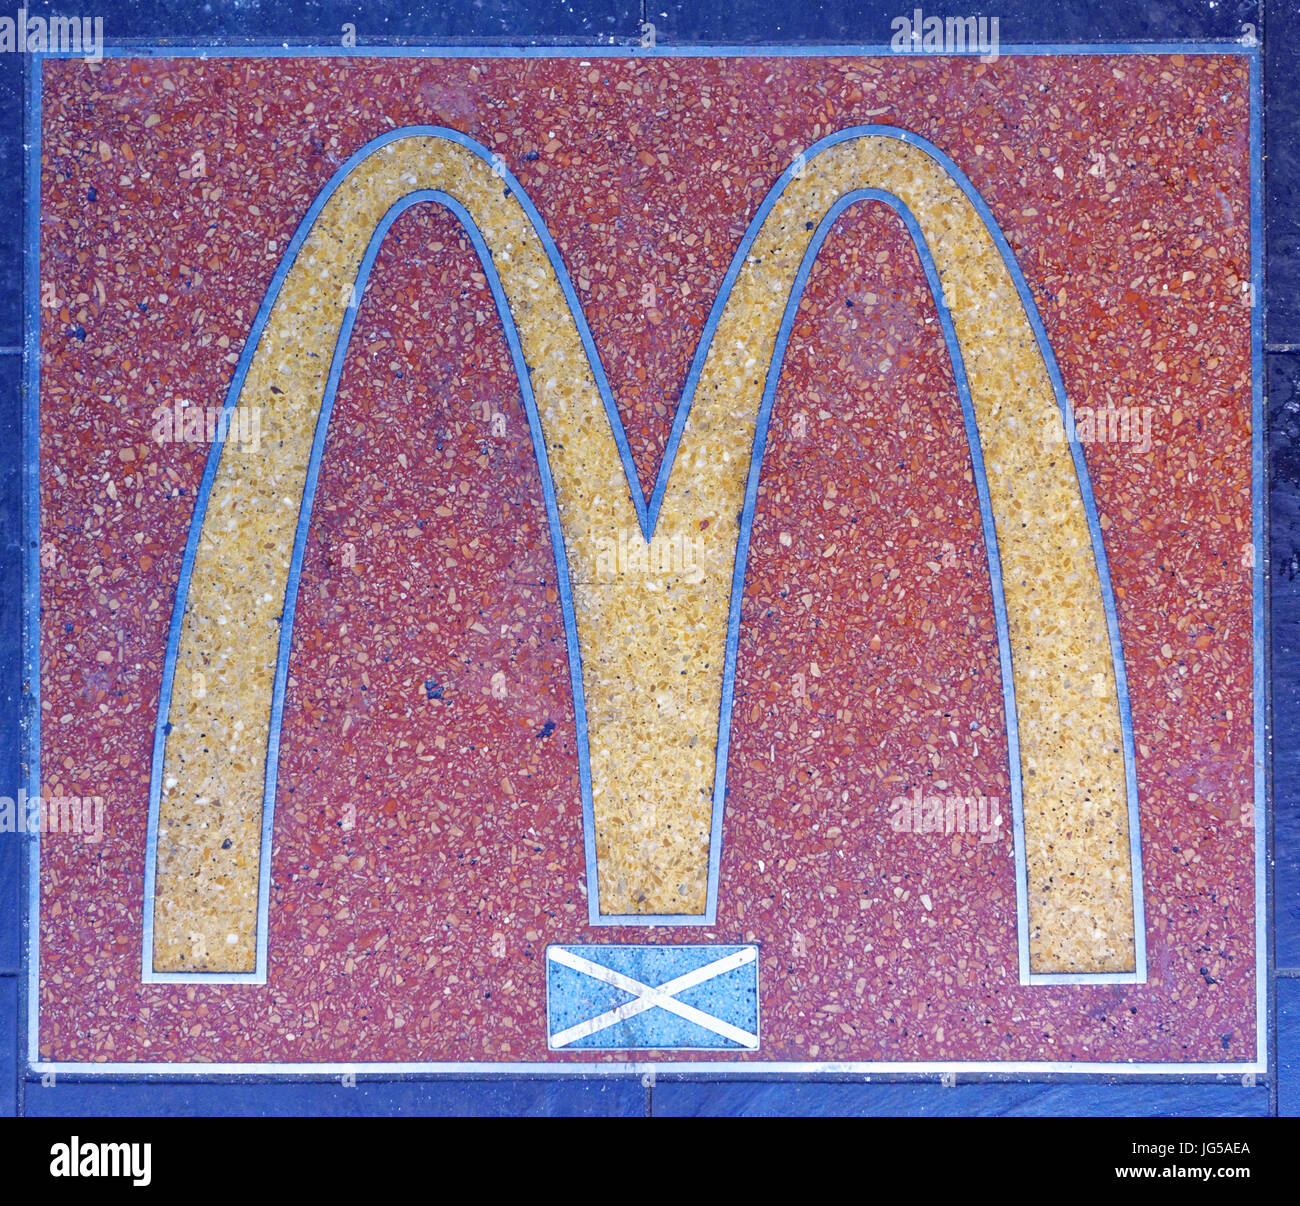 Ristorante McDonald's Scozia passo in marmo con bandiera scozzese Foto Stock